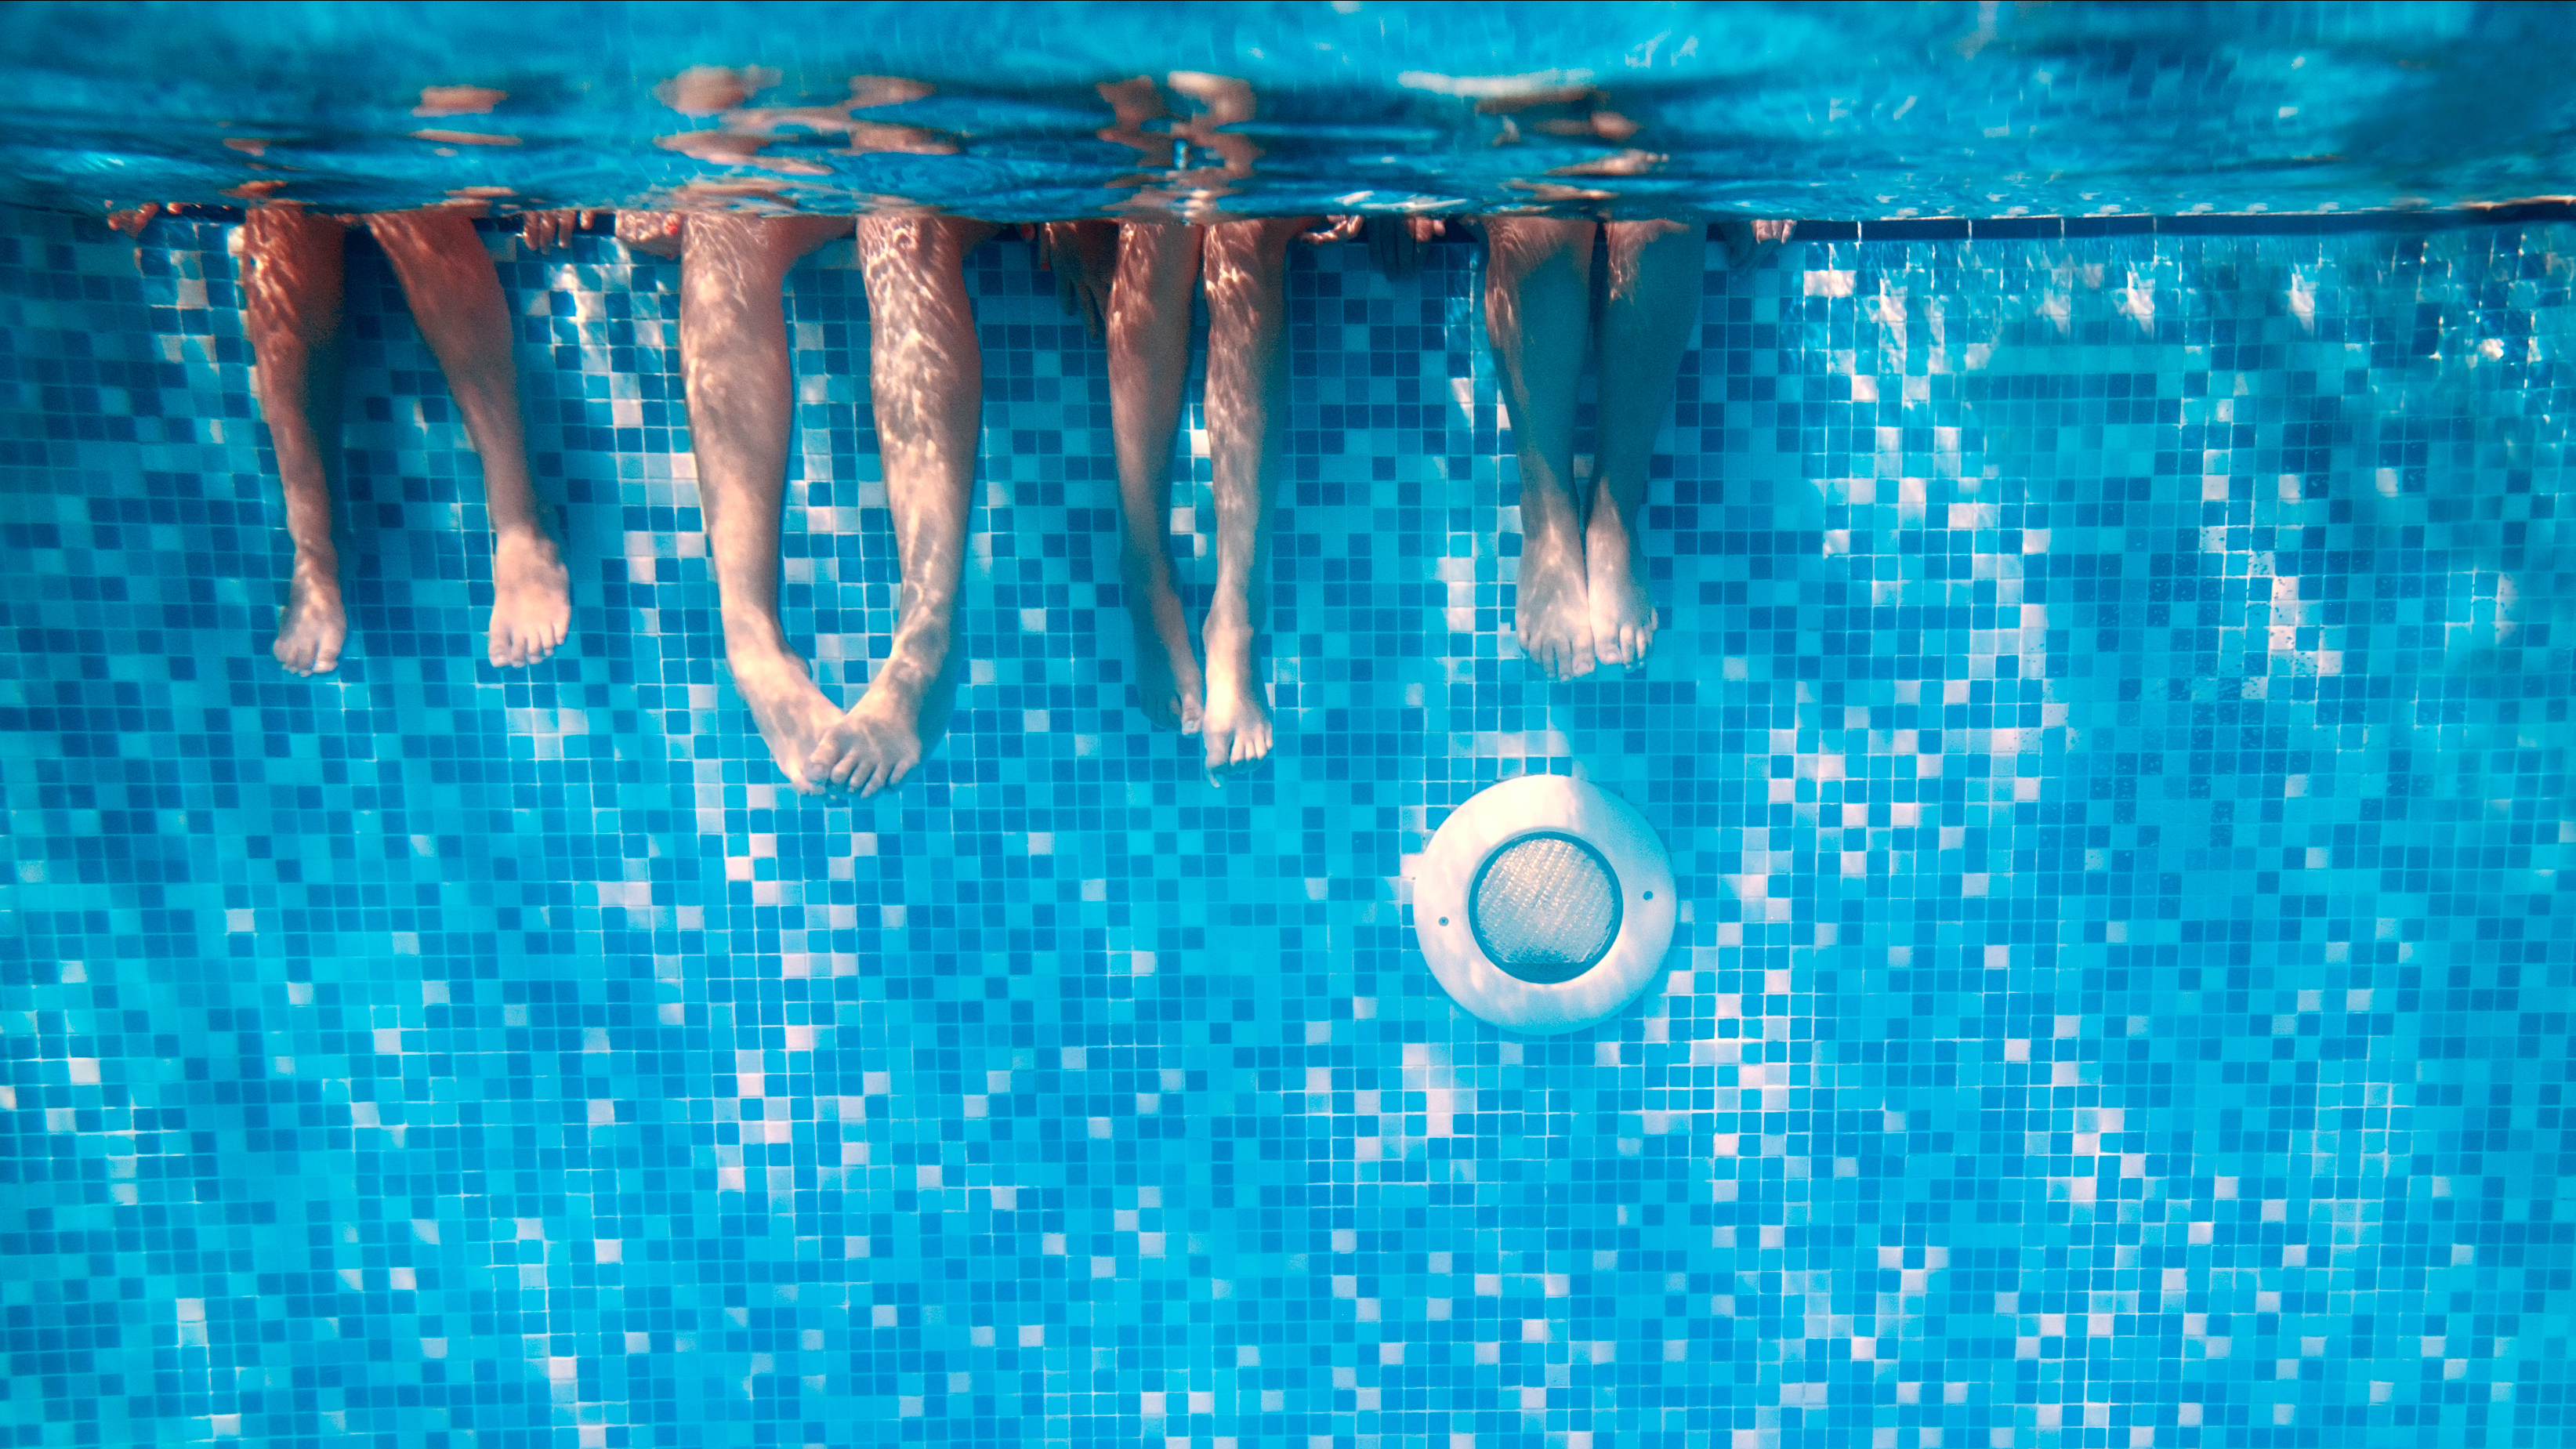 El lío que se ha formado tras abrirse una piscina recién pintada: “Parece que se han bañado los pitufos"